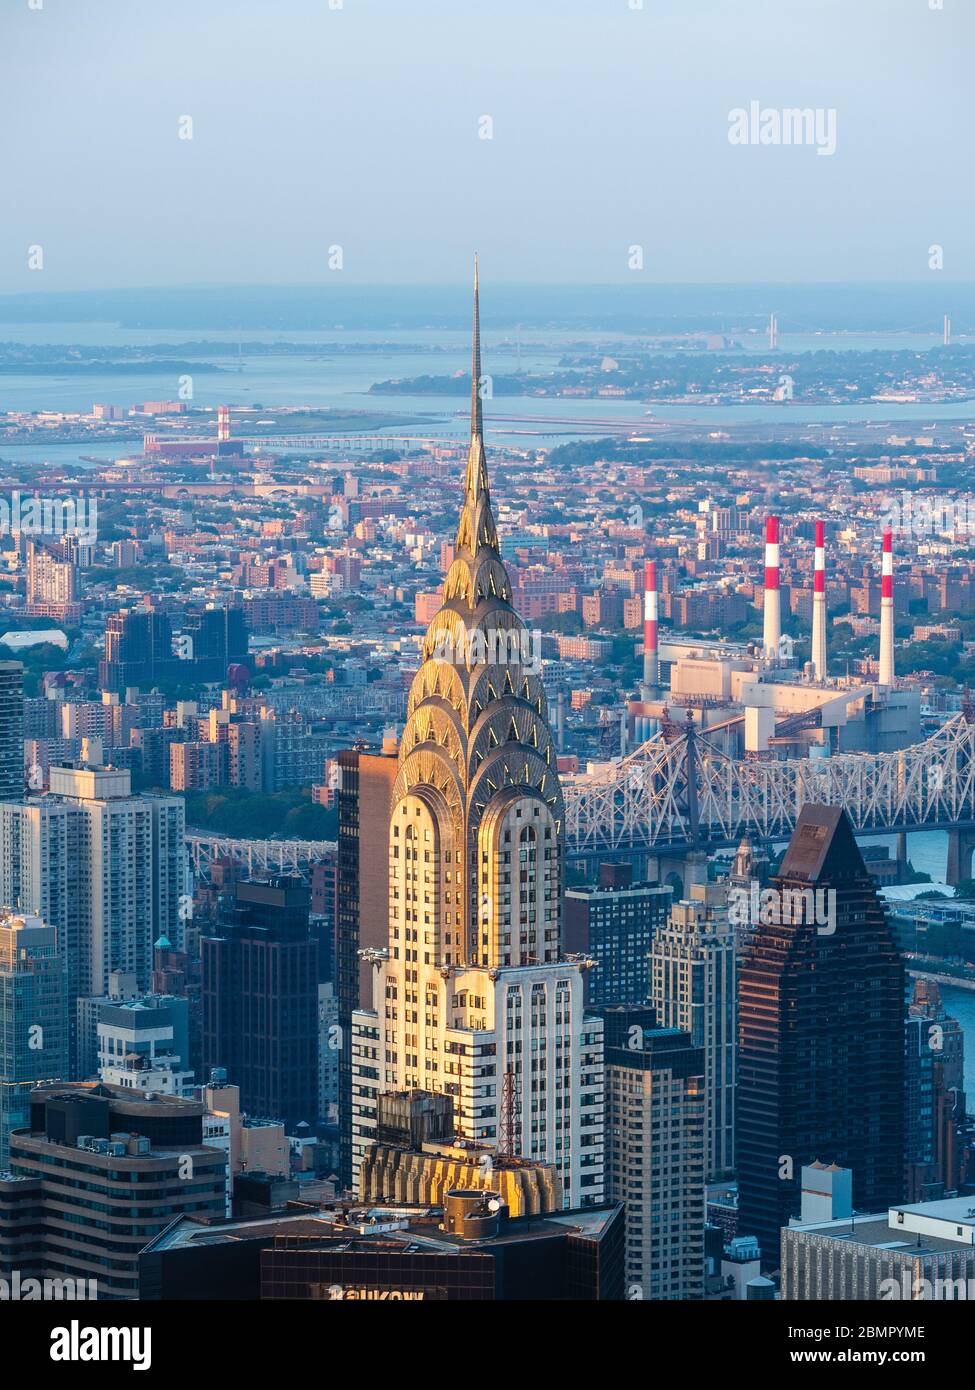 Punto di riferimento architettonico Chrysler Building, un grattacielo in stile Art Deco situato a Manhattan, New York City, Stati Uniti d'America. Foto Stock